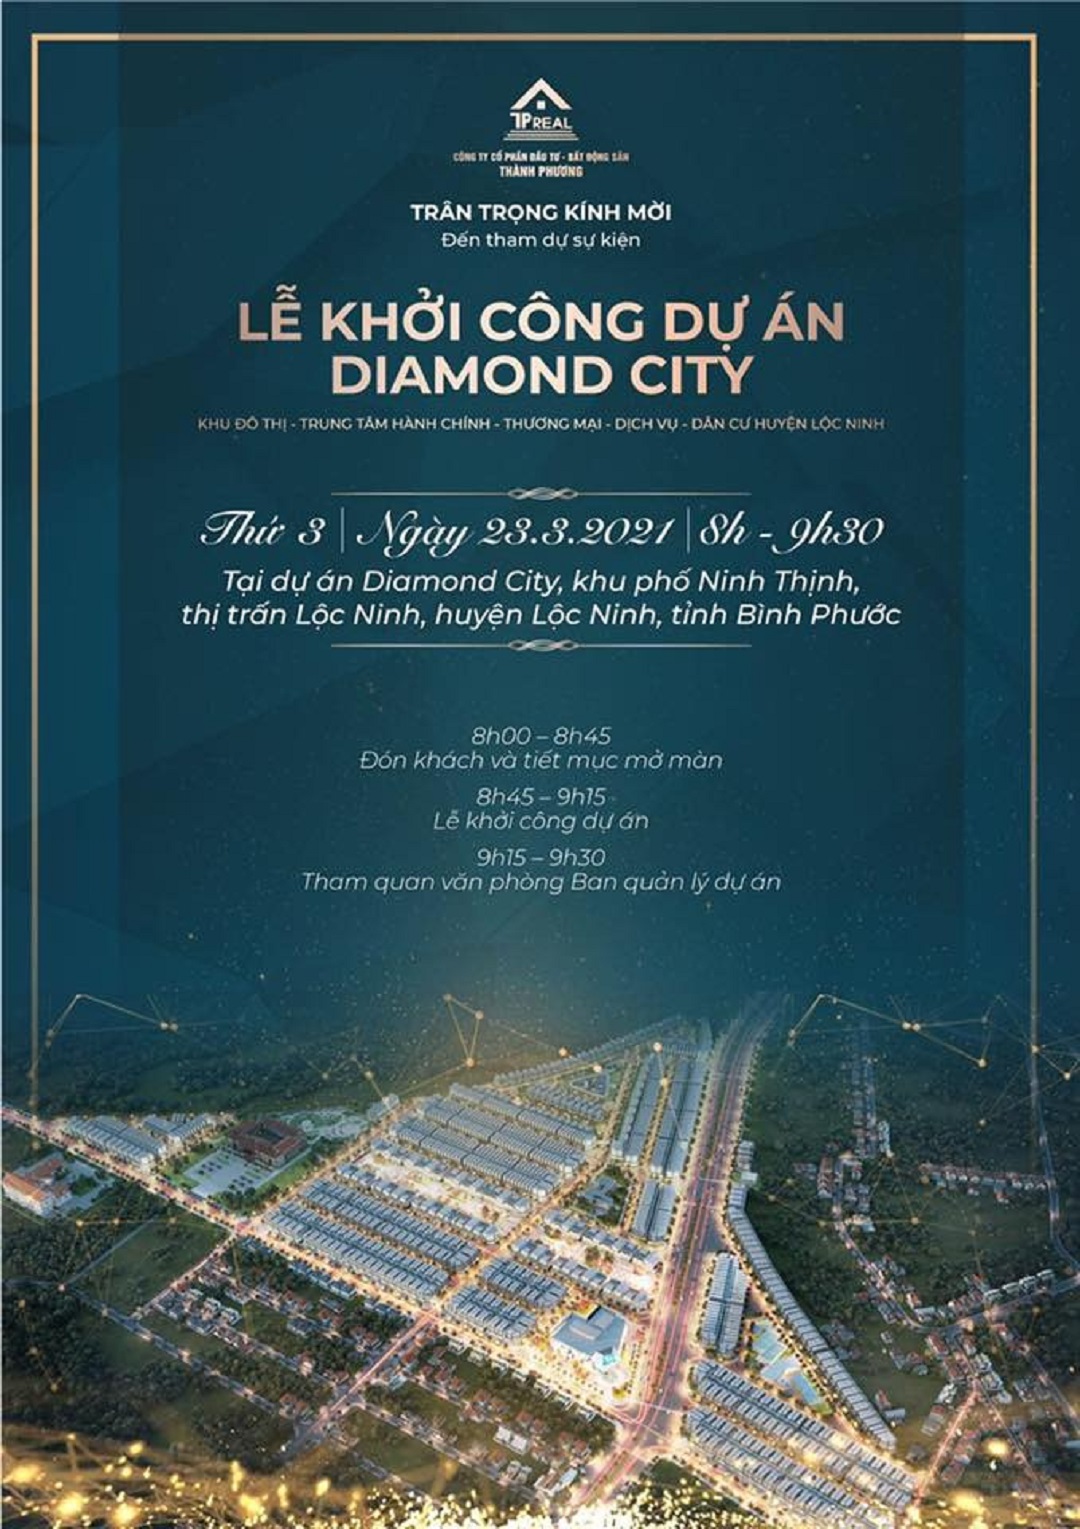 Thông báo lễ khởi công dự án Diamond City - Khu đô thị - trung tâm hành chính - thương mại - dịch vụ - dân cư 